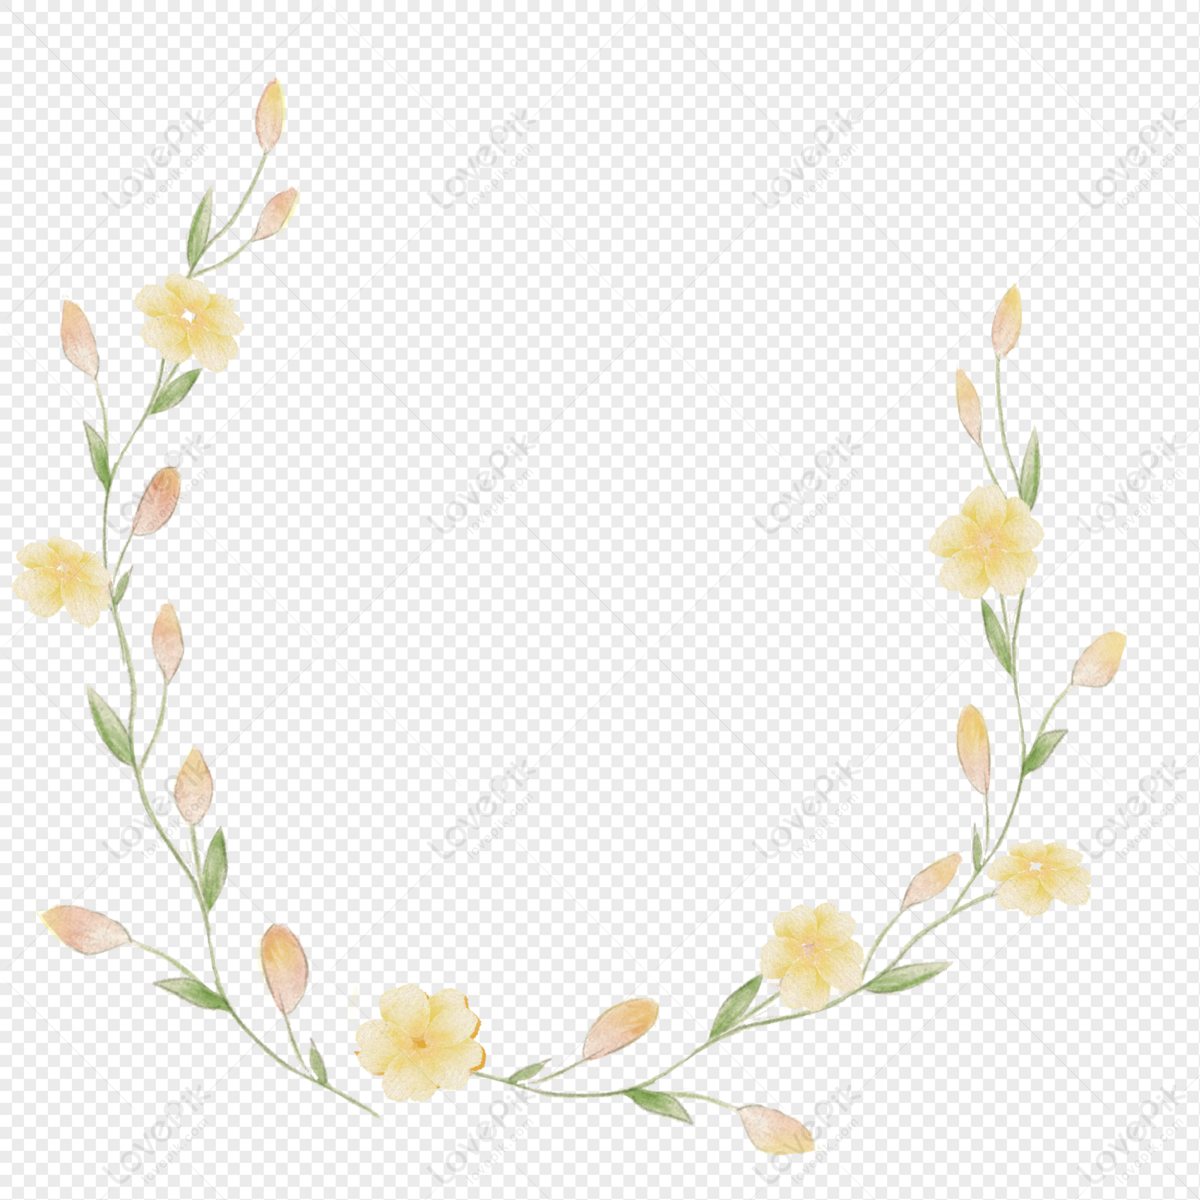 Hình ảnh Flower Border PNG sẽ khiến bạn say mê với những chi tiết hoa lá tinh tế, mang đến một không gian tràn ngập sắc màu và nét đẹp tự nhiên. Với nhiều kiểu dáng khác nhau, bạn có thể biến tấu và sáng tạo cho công việc của mình một cách dễ dàng và hiệu quả.